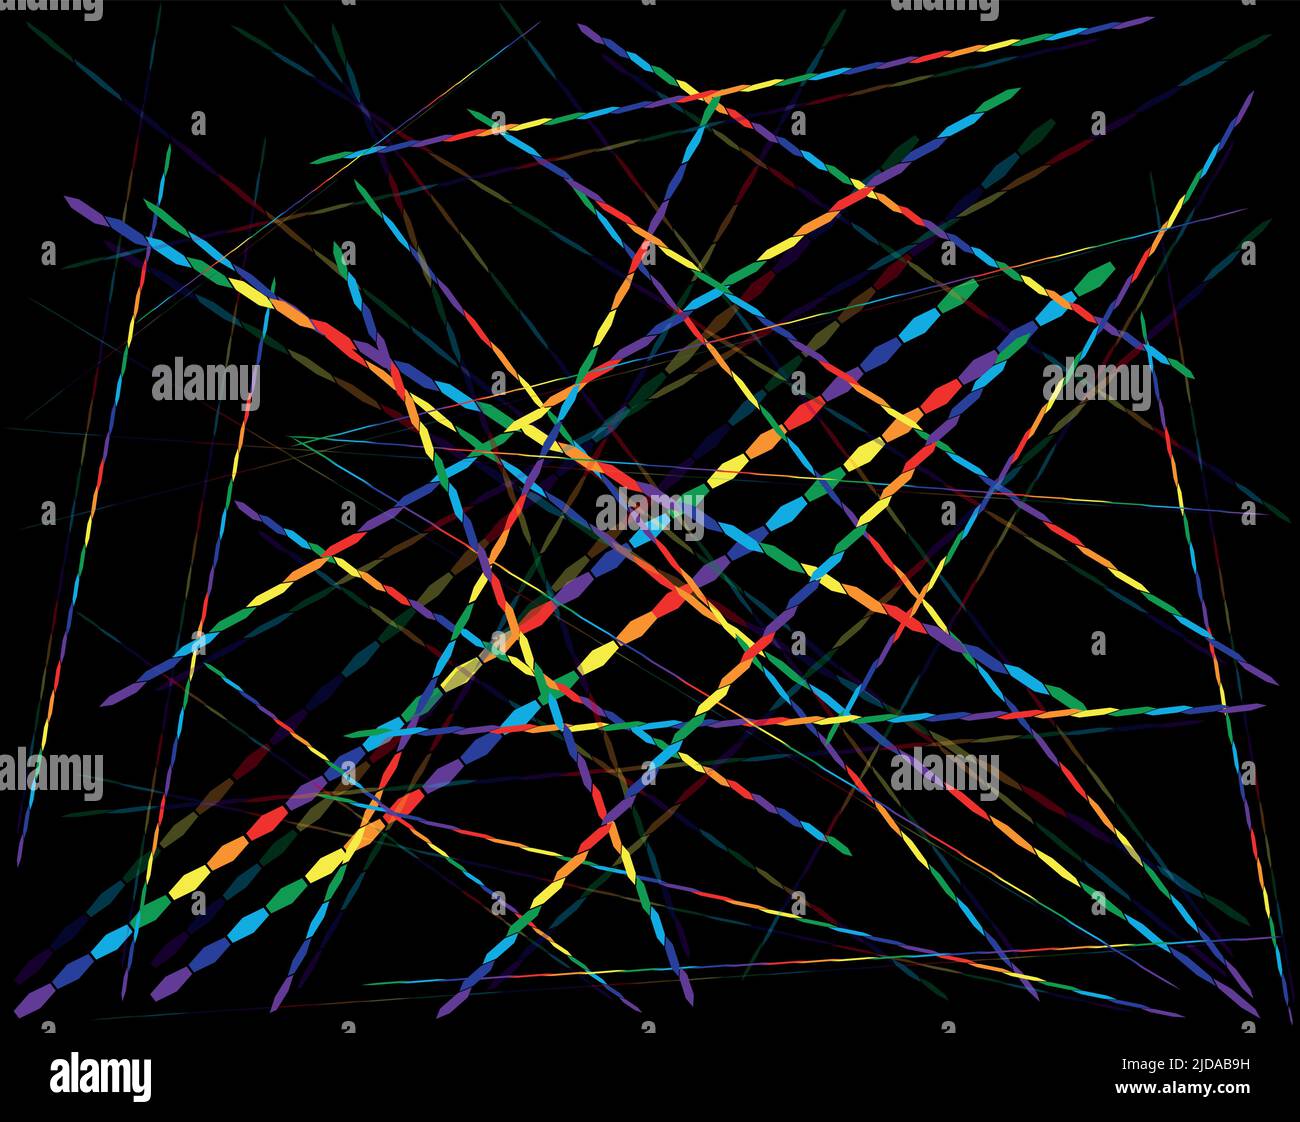 Sfondo per qualsiasi tipo di disegno. Su un campo nero, i fili iridescenti creano una rete di toni da traslucidi a luminosi. Illustrazione Vettoriale